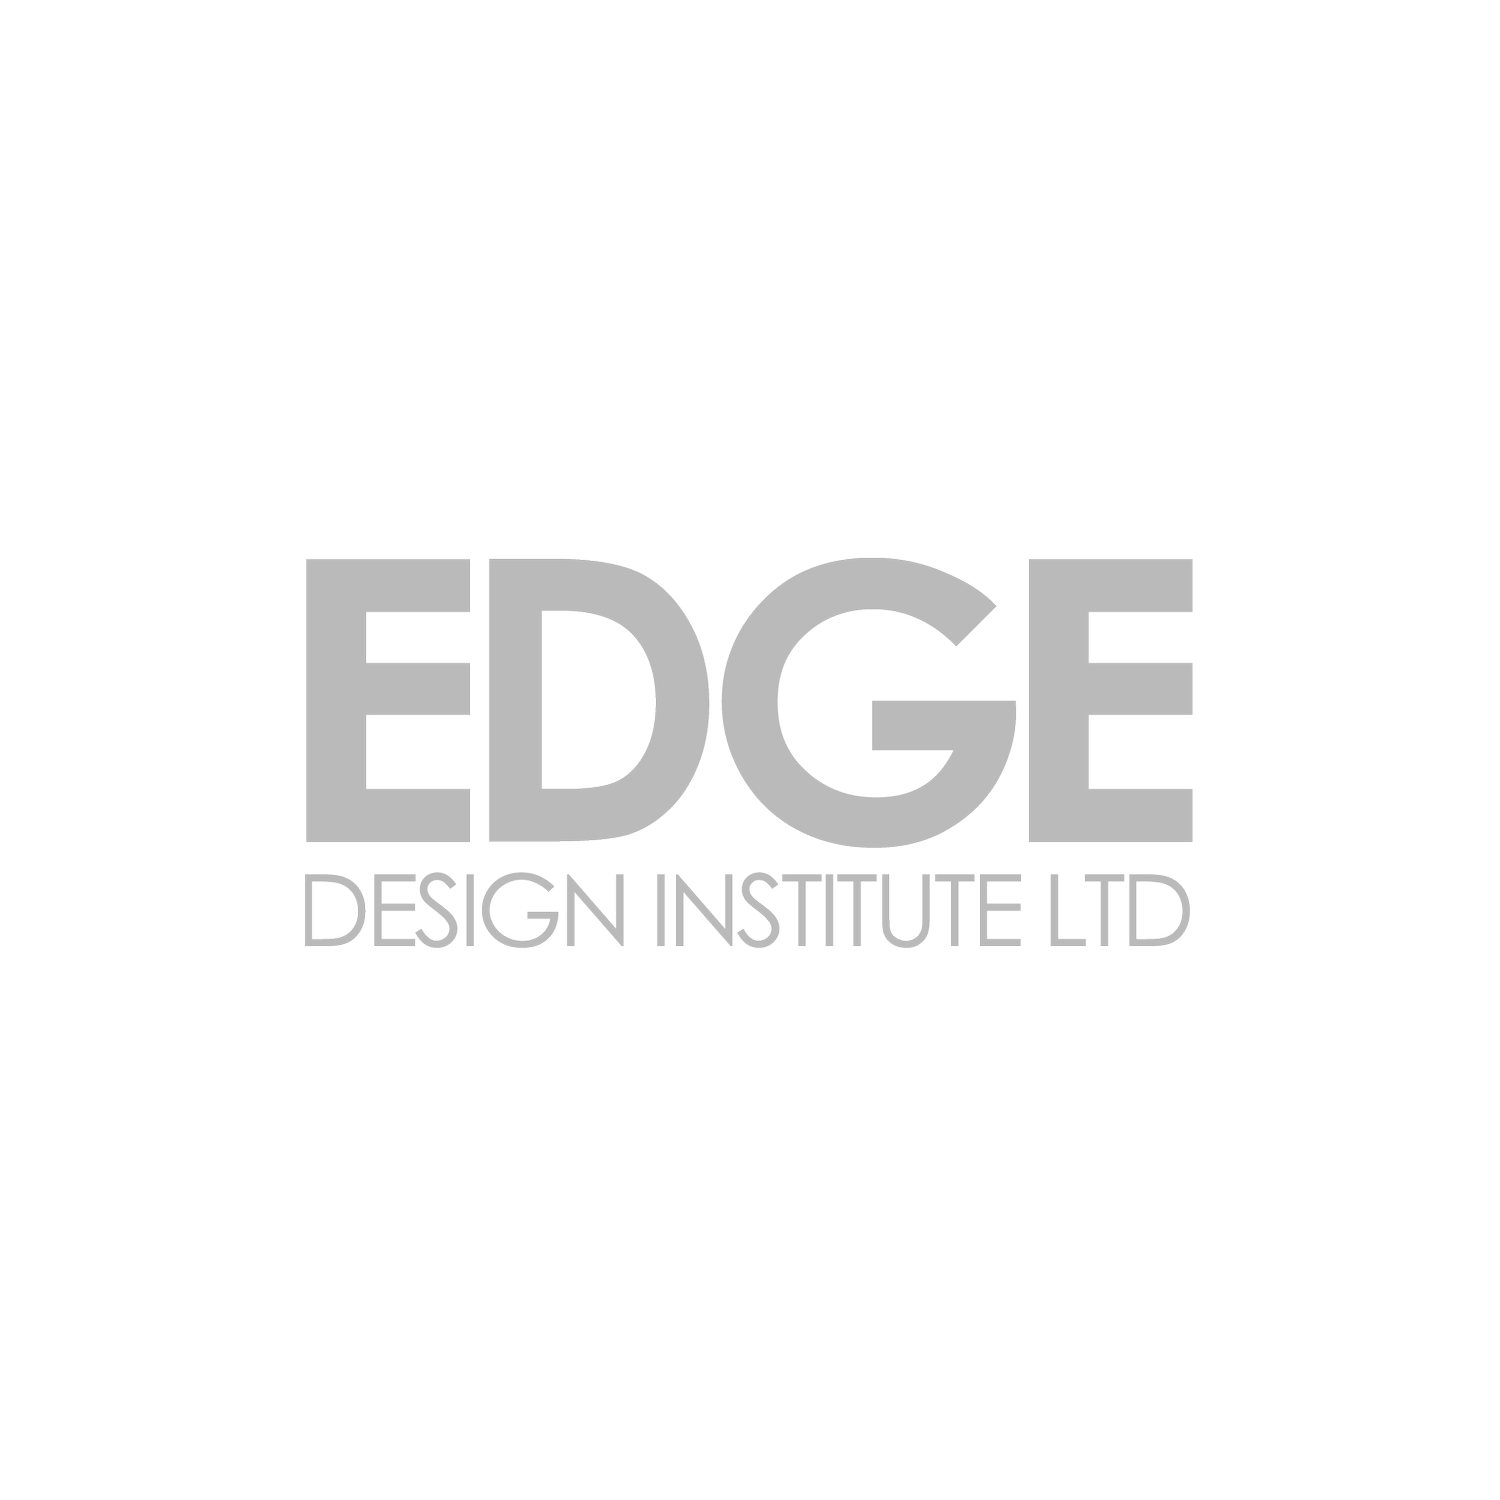 EDGE DESIGN INSTITUTE LTD.